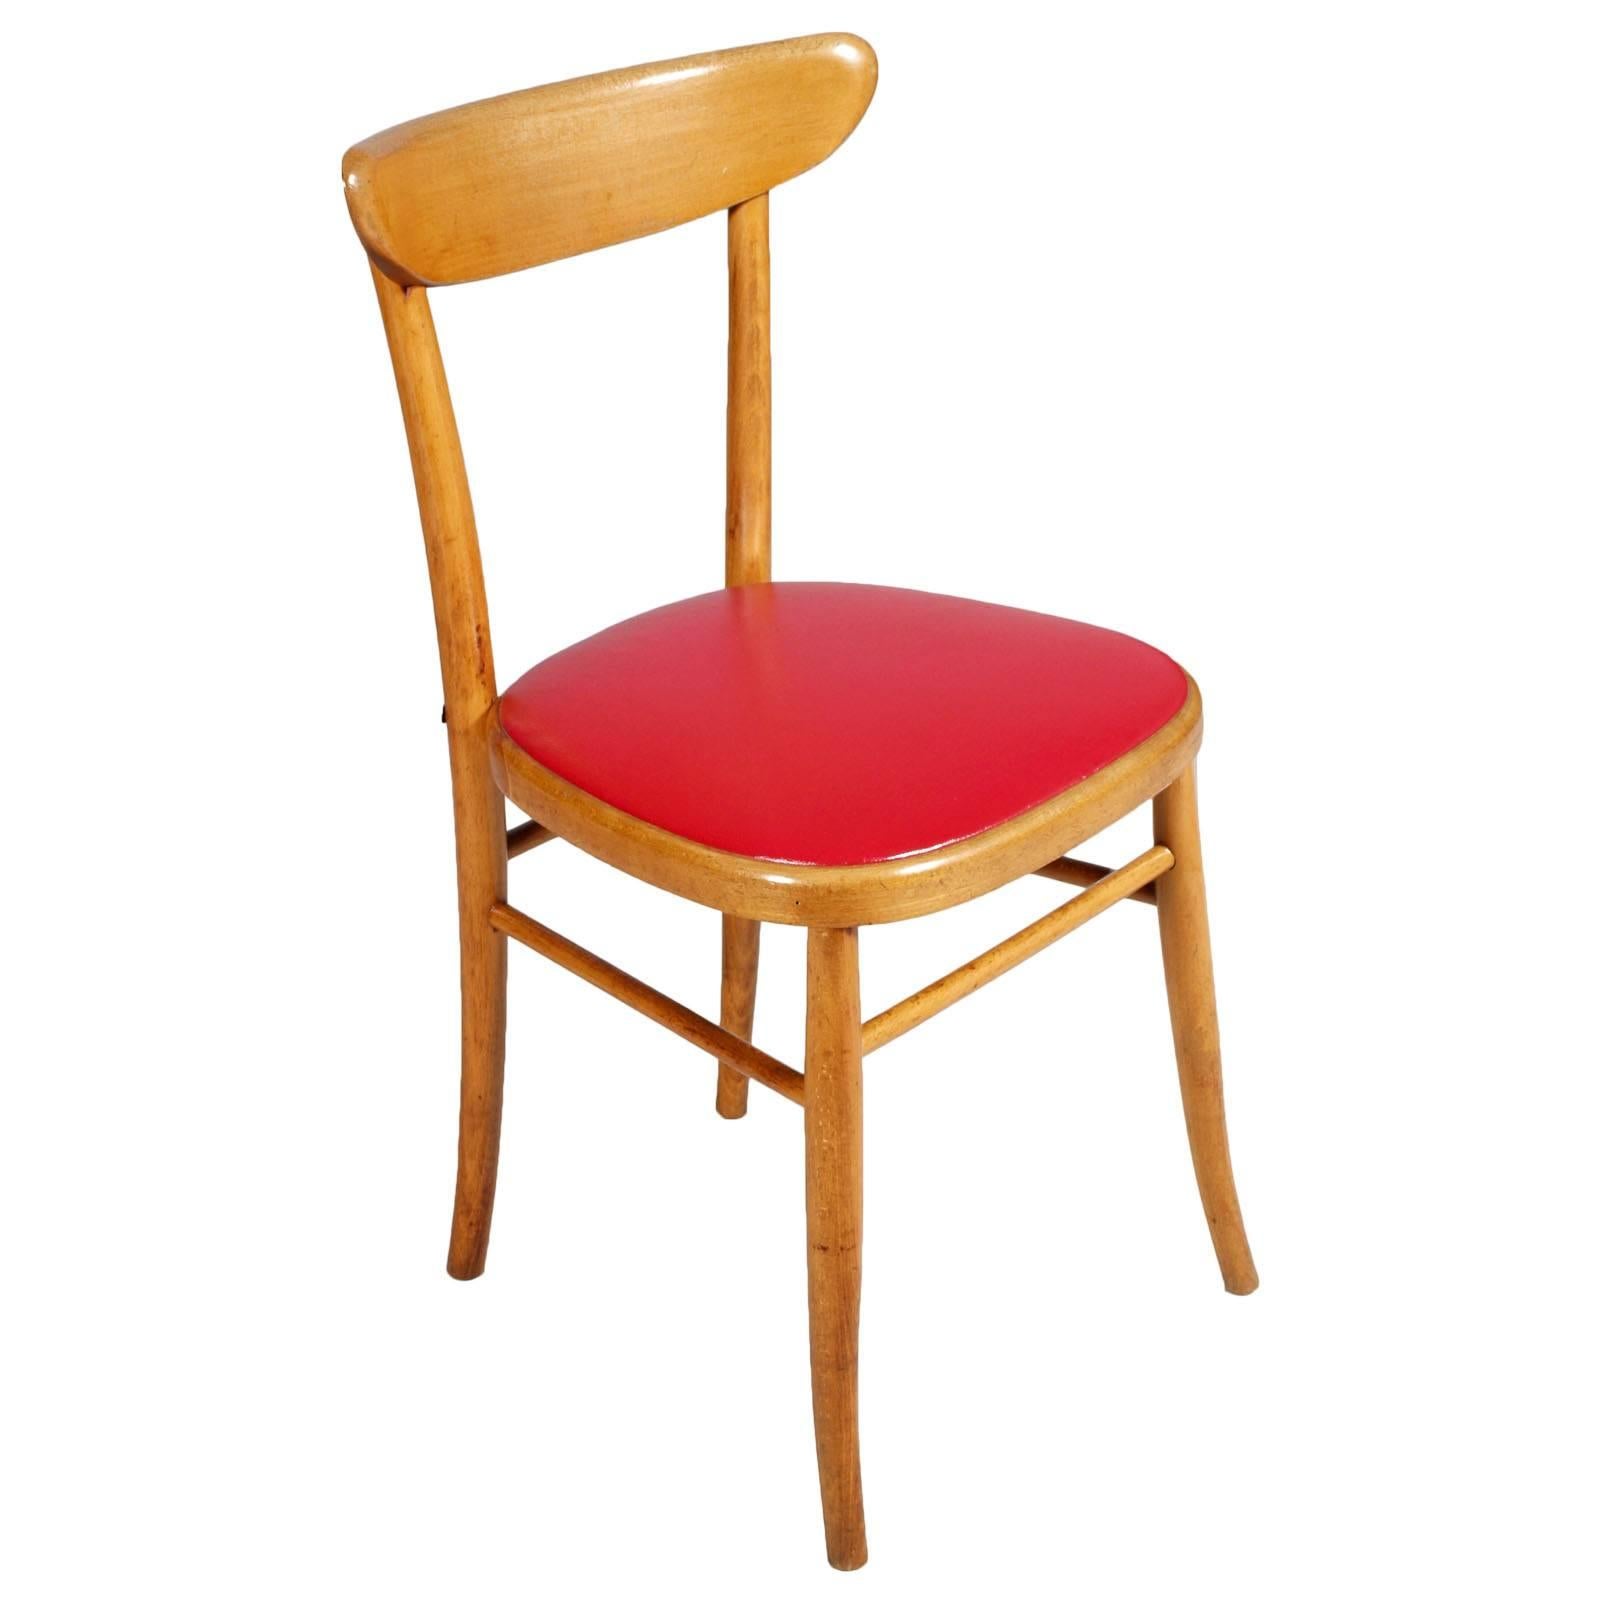 italienische Beistellstühle aus der Mitte des Jahrhunderts 1950, ausgezeichneter Zustand.
Originalpolsterung mit rotem Kunstleder. Der Stuhl wurde in den 1950er Jahren in Italien aus edlem blonden Nussbaumholz gefertigt und mit Wachs poliert.

Maße